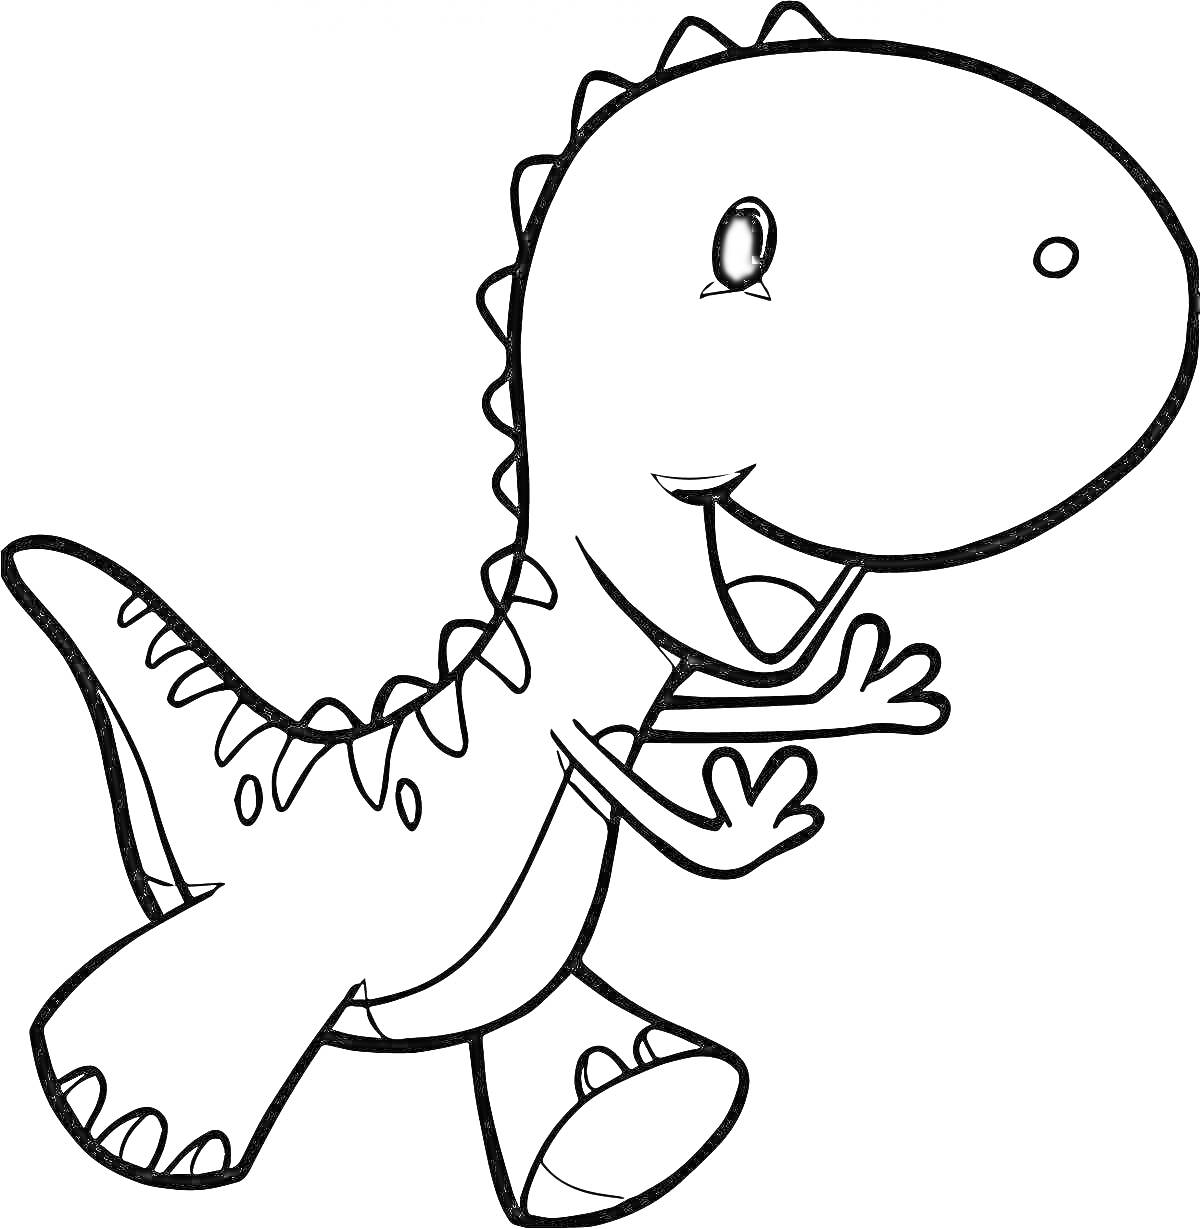 Раскраска Динозаврик с улыбающимся лицом, стоящий на задних лапах